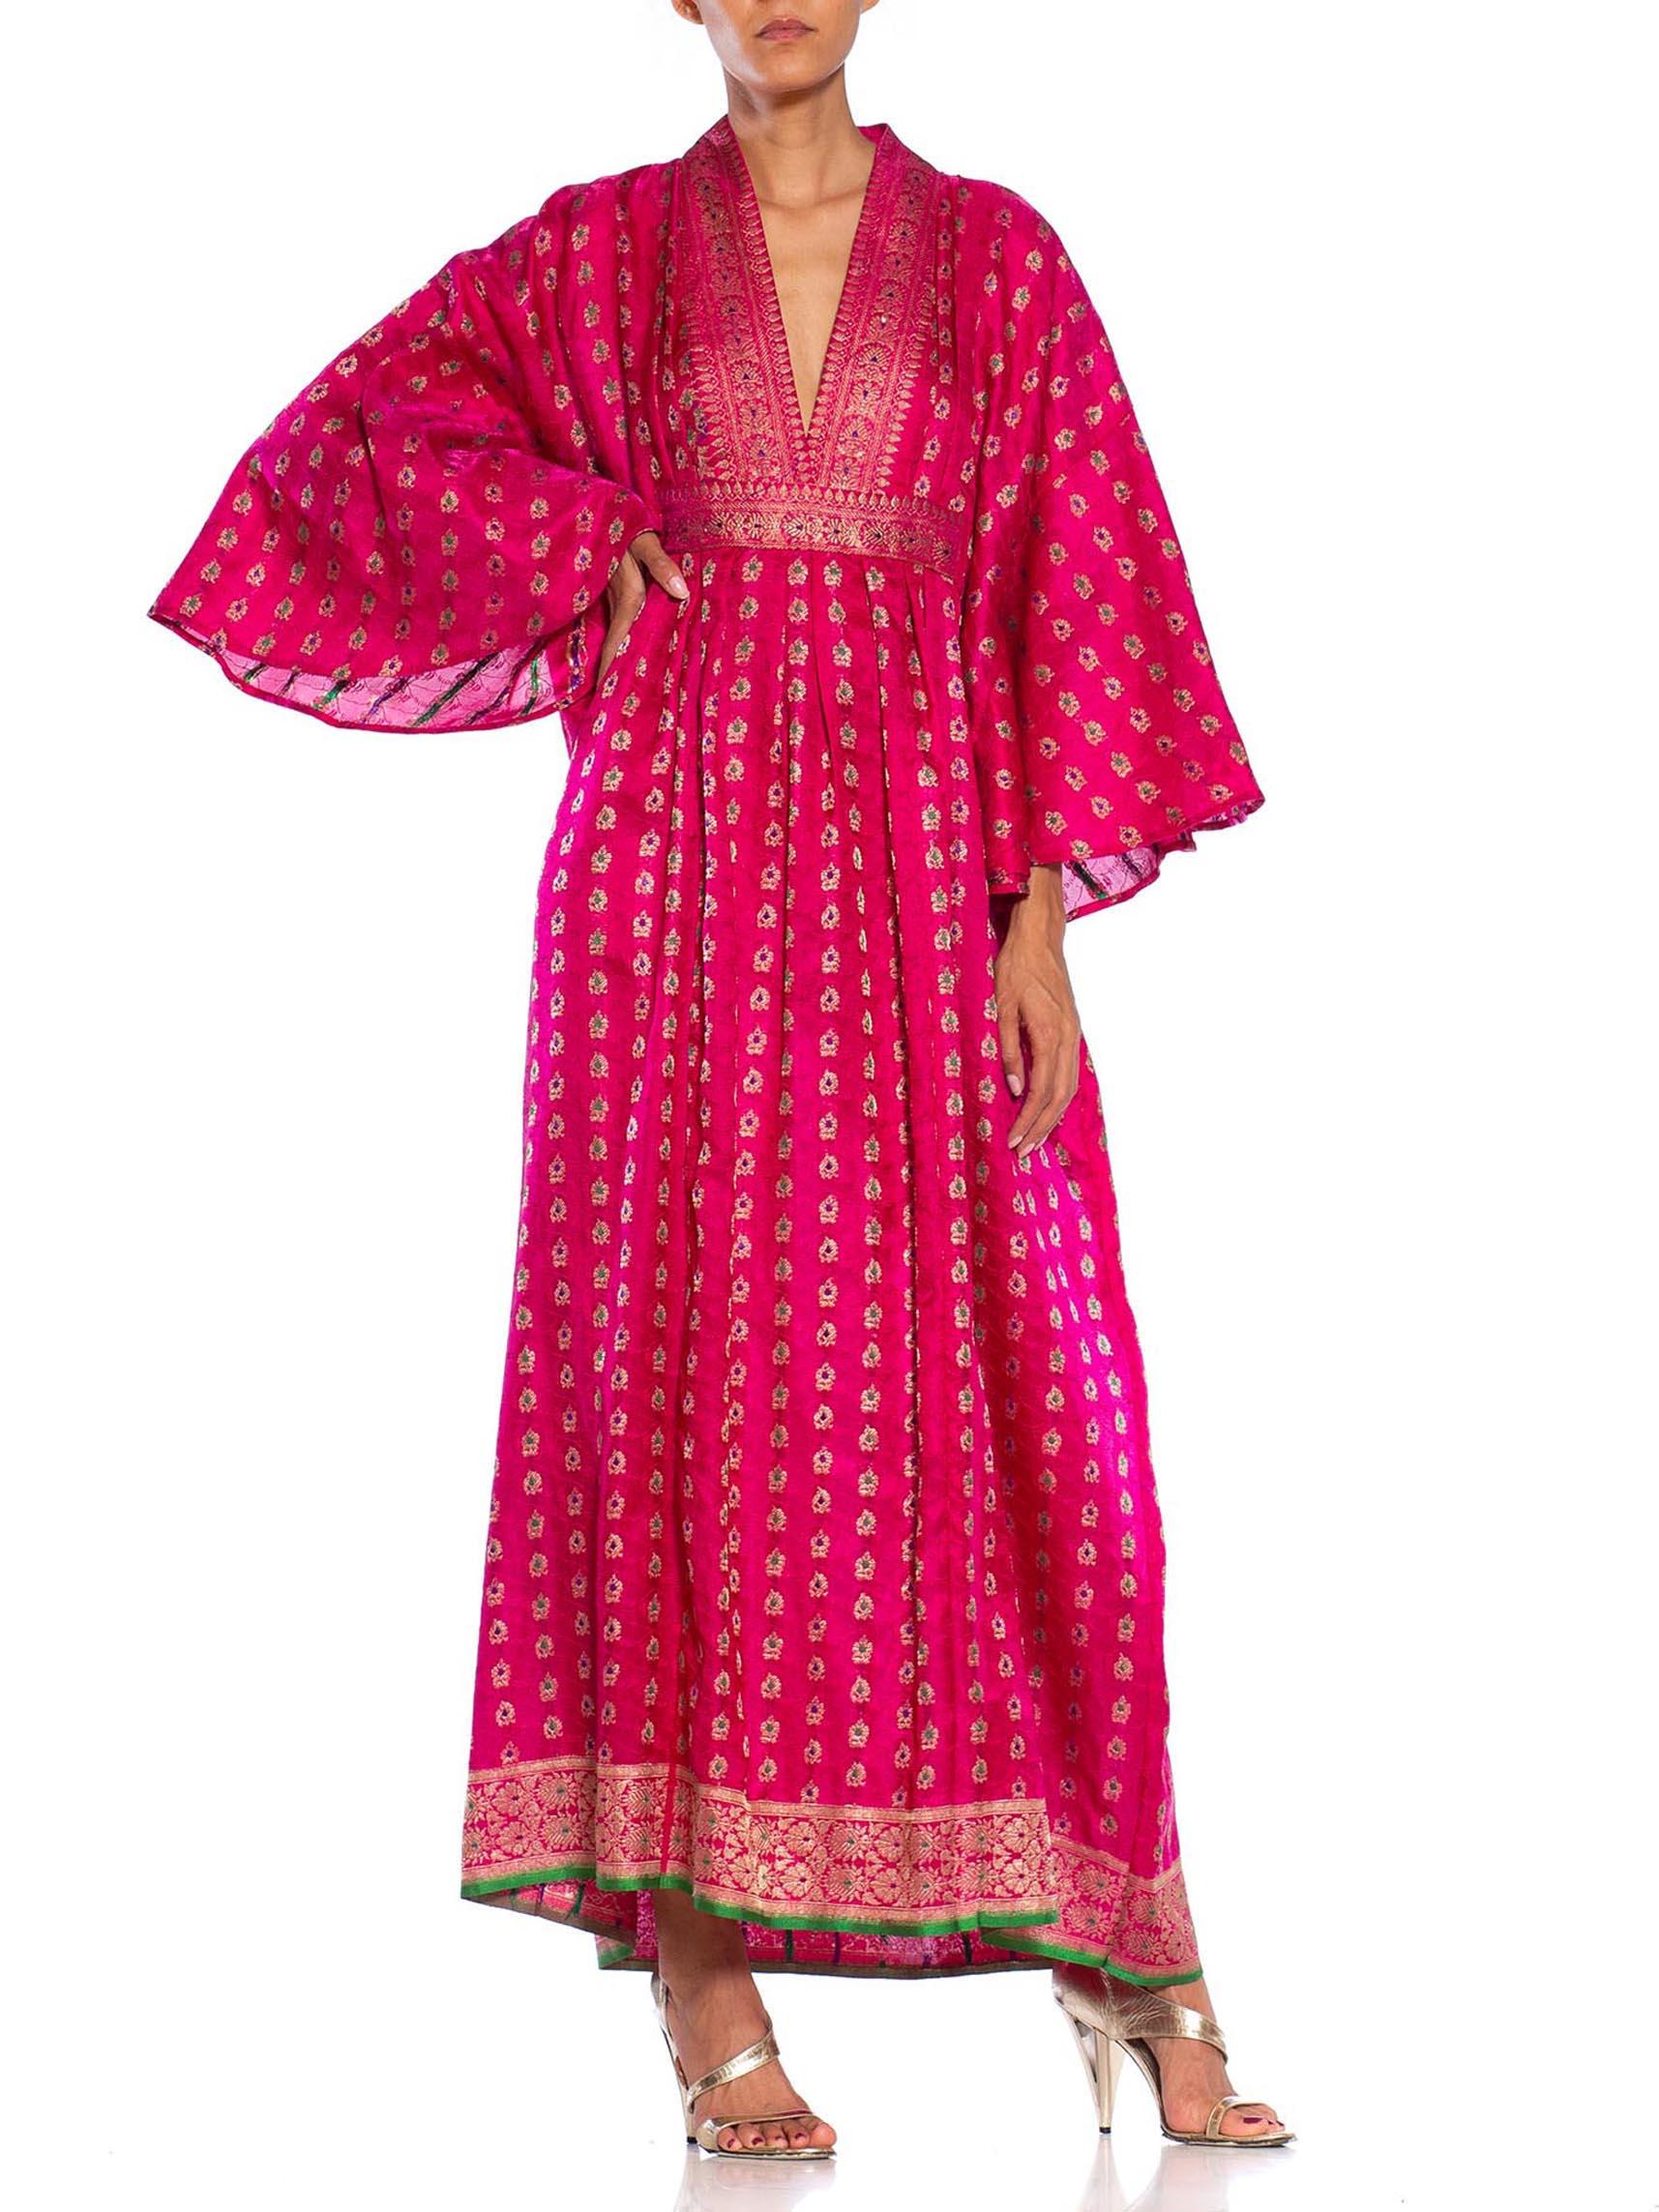 MORPHEW COLLECTION Pink Metallic Silk Kaftan Made From Vintage Saris 1